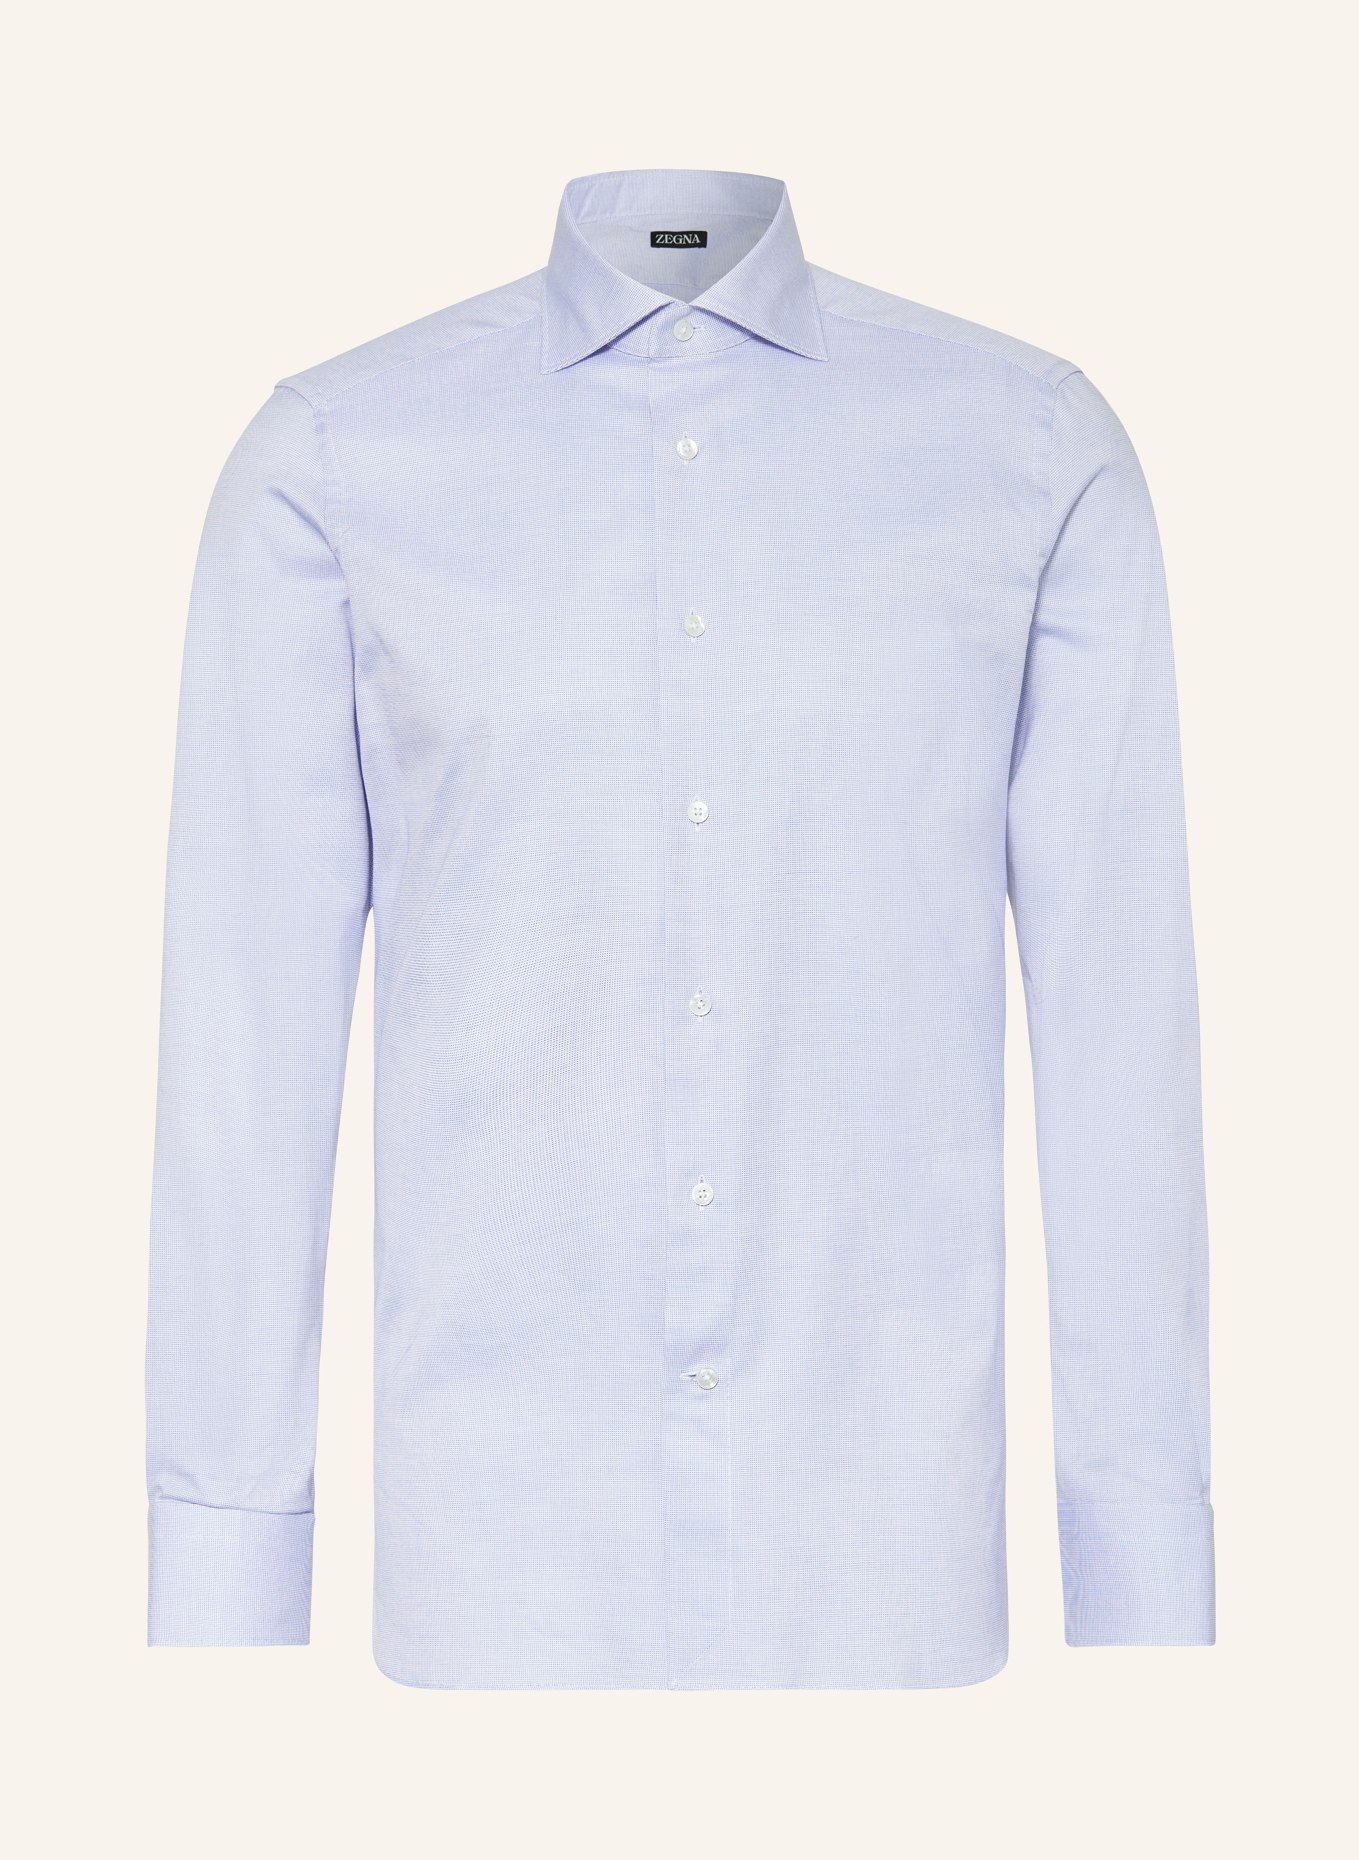 ZEGNA Shirt regular fit, Color: LIGHT BLUE (Image 1)